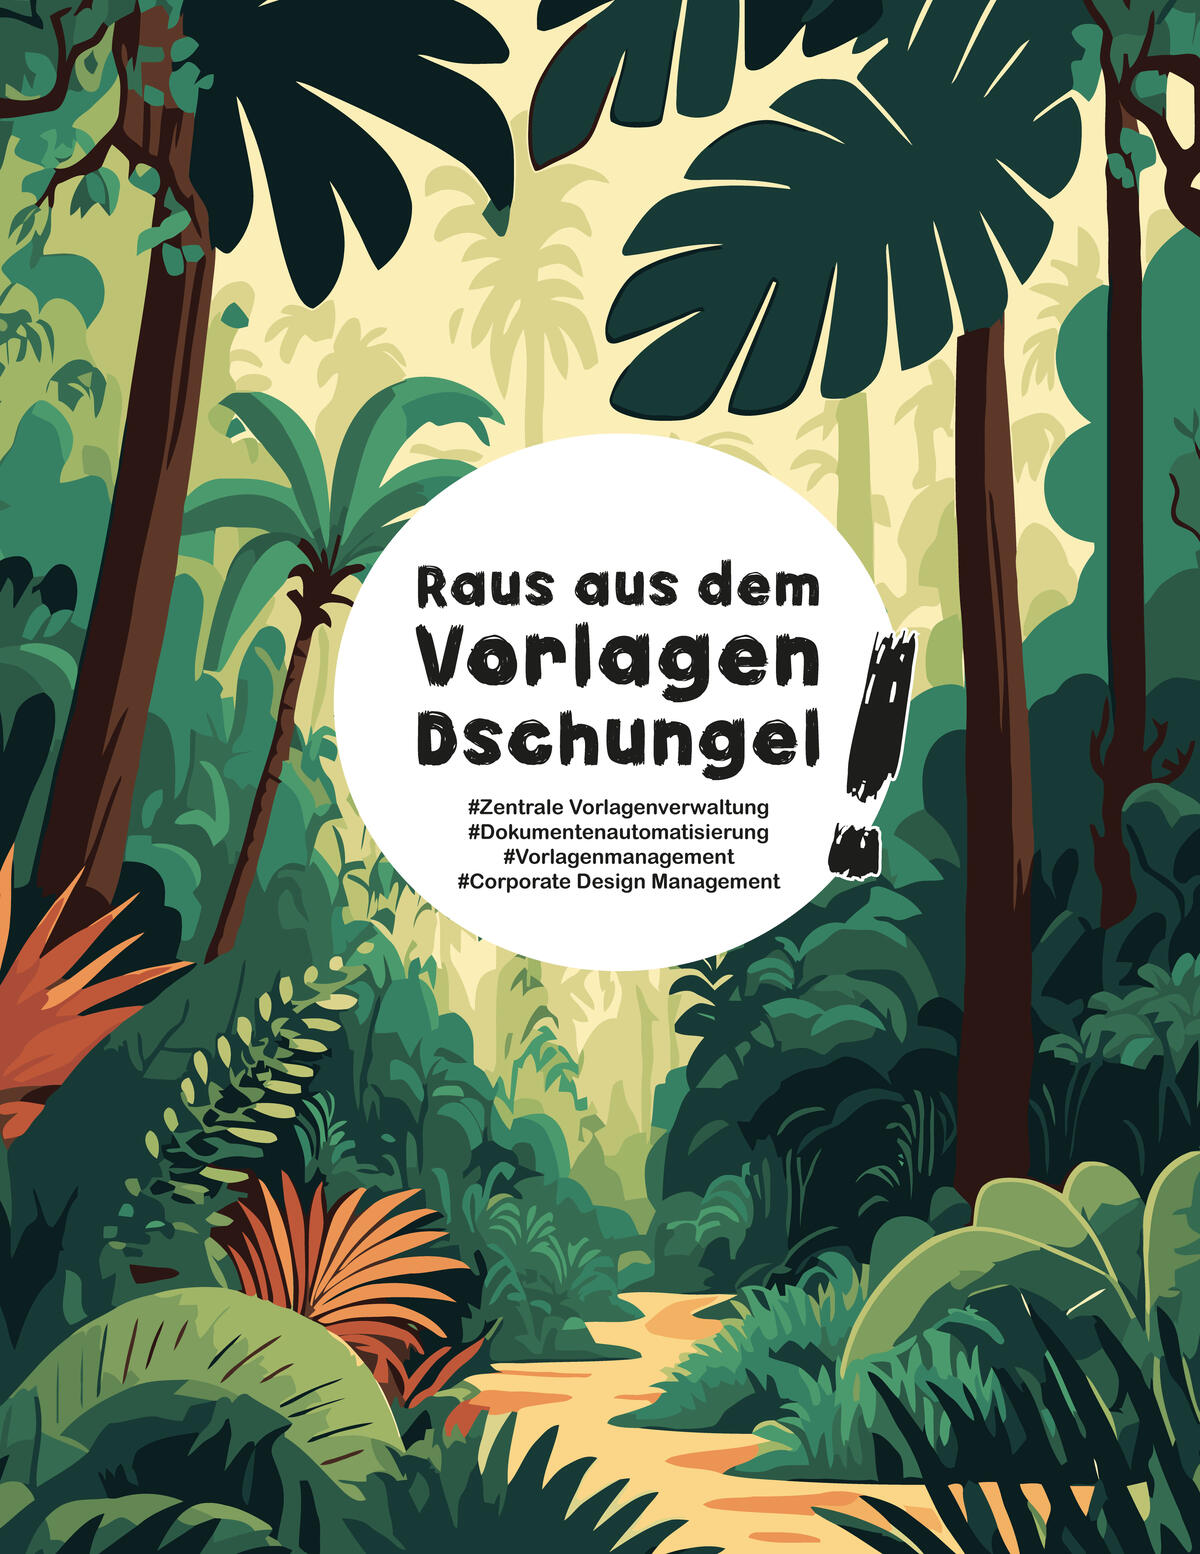 Vektorgrafik: Dschungellandschaft mit Text: Raus aus dem Vorlagendschungel!